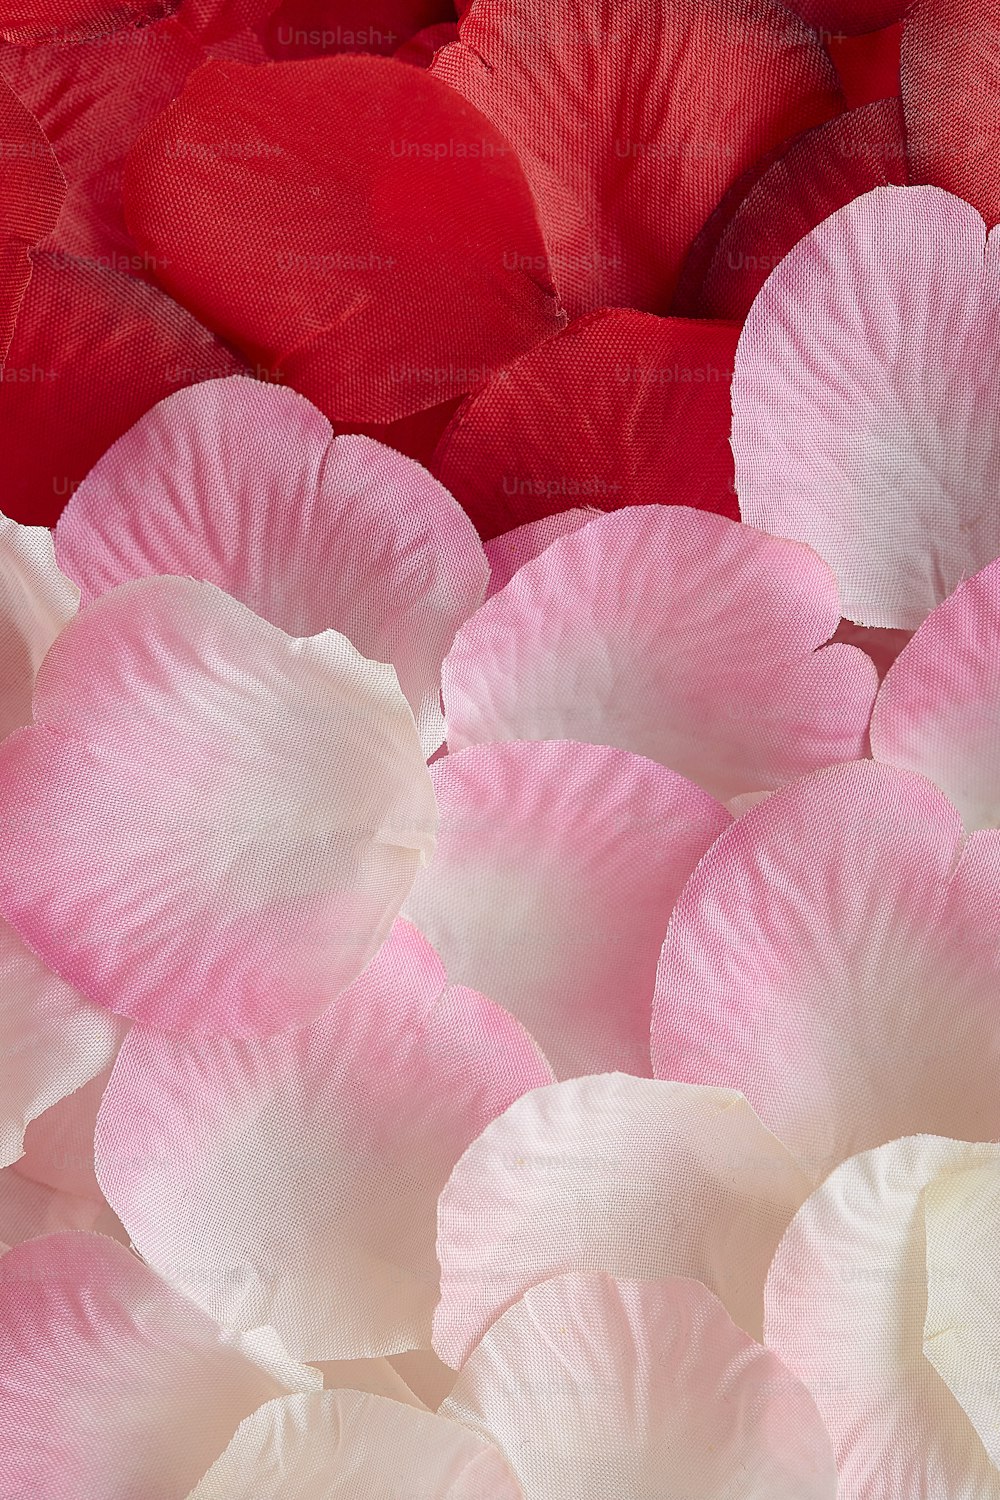 테이블에 분홍색과 흰색 꽃의 무리